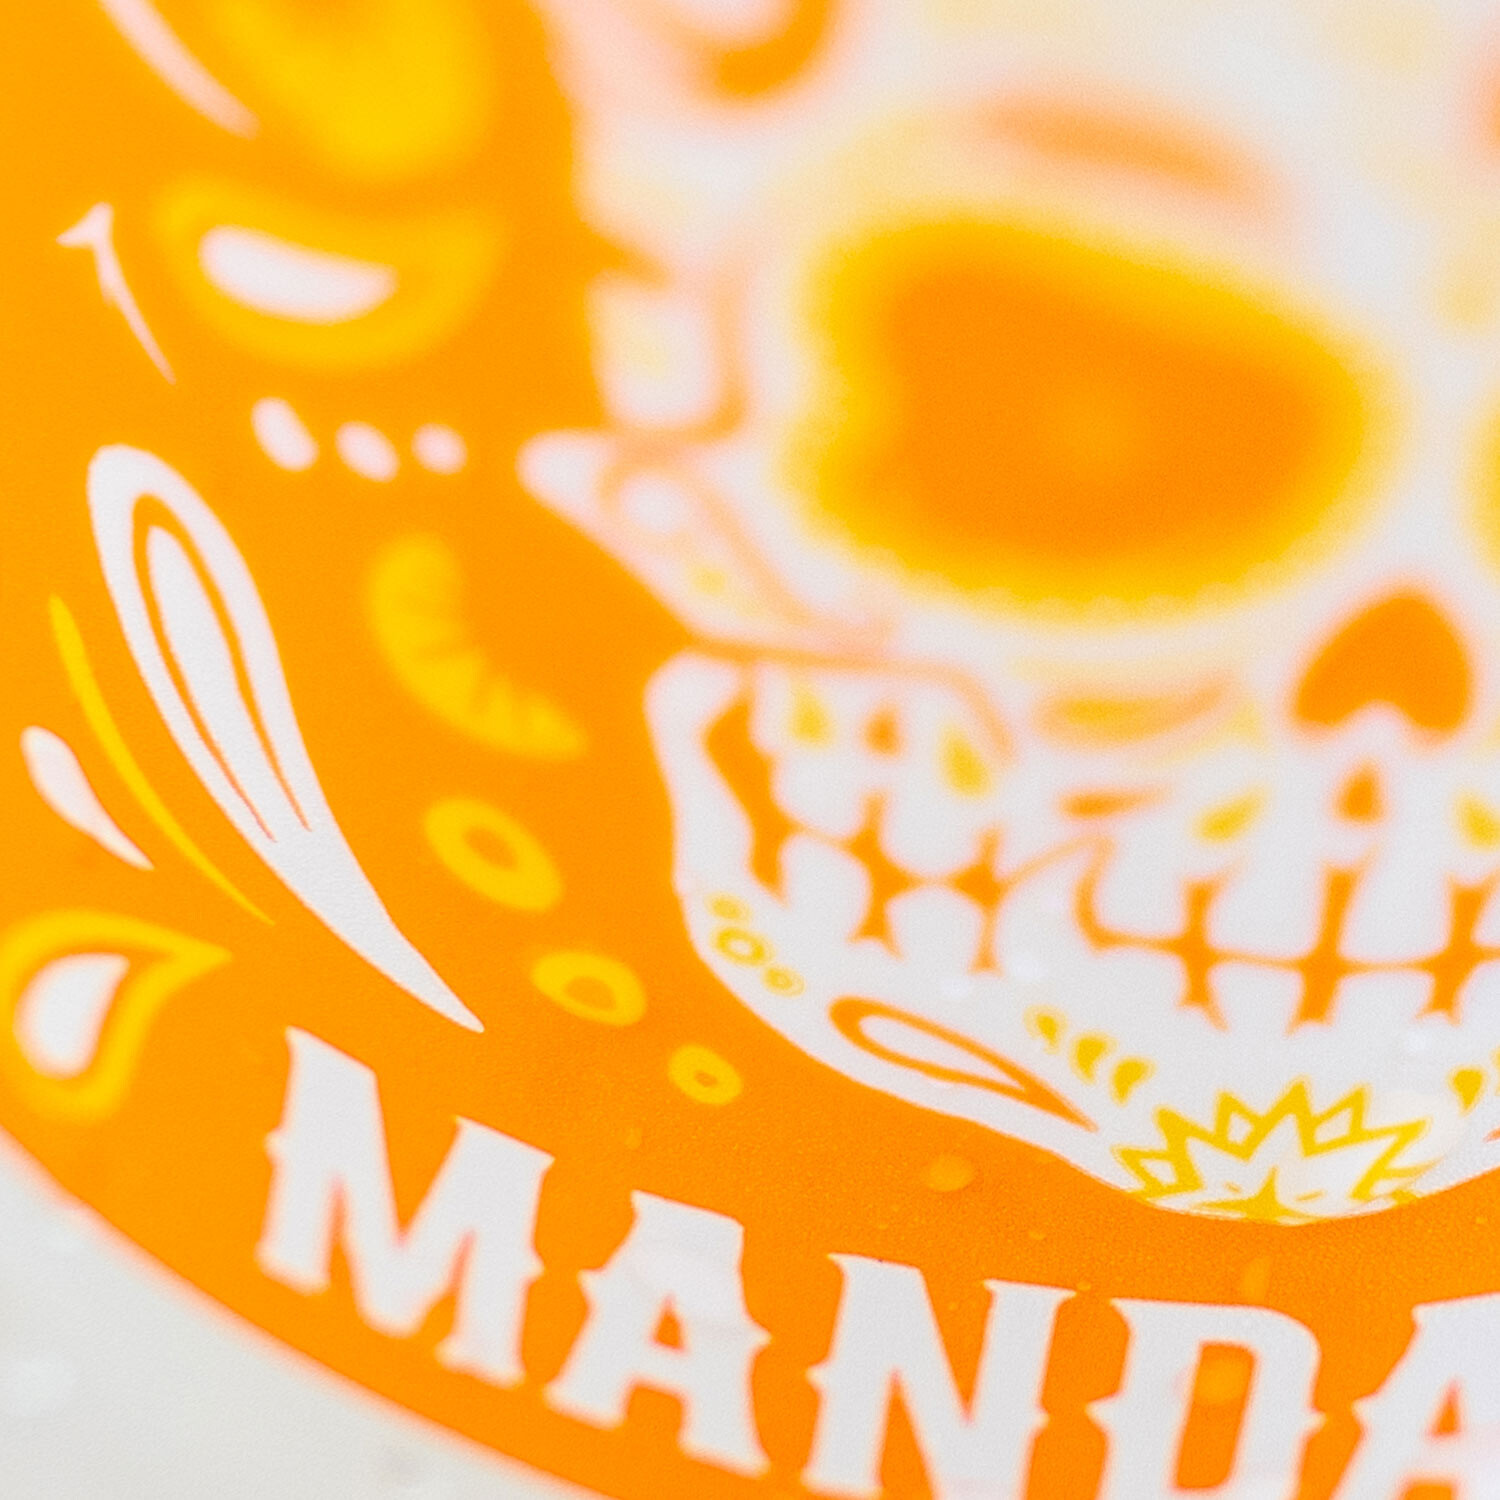 Buenavida Hard Seltzer - Mandarin close-up